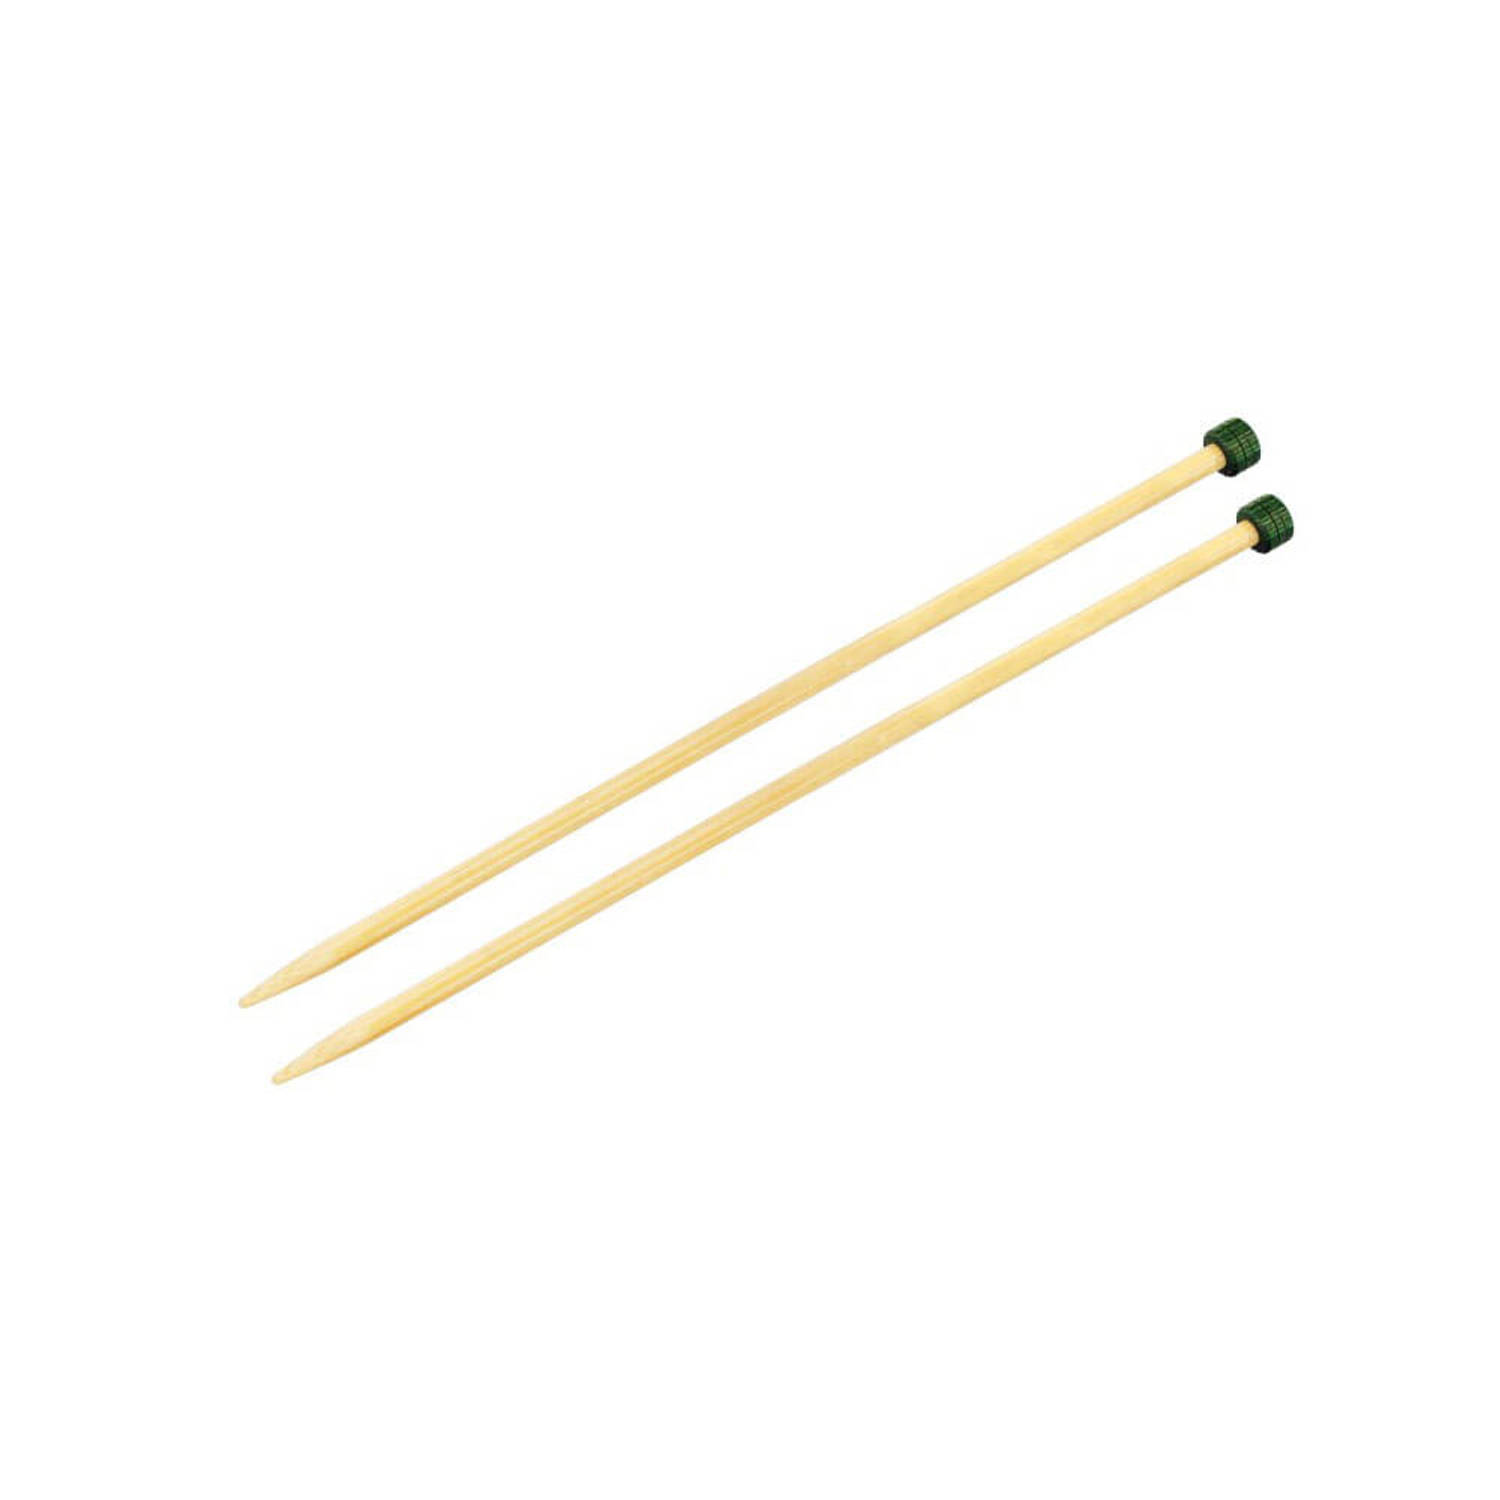 KnitPro Bamboo breinaalden 25cm 9.00mm.